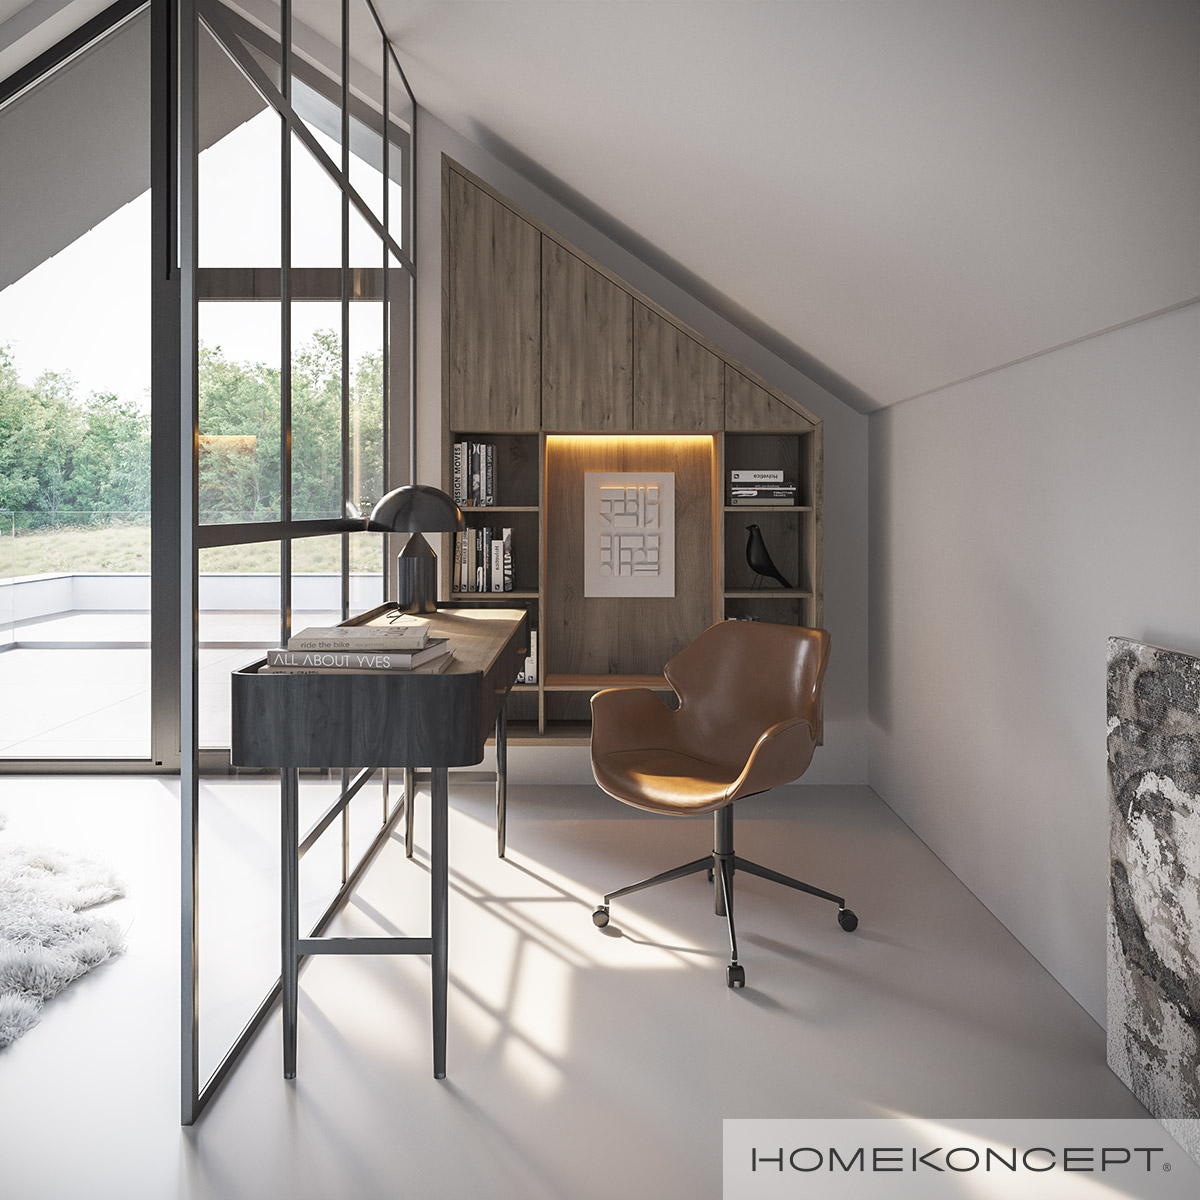 Domowe biuro we własnej sypialni – aranżacja kącika do pracy w projekcie nowoczesnego domu HOMEKONCEPT 91